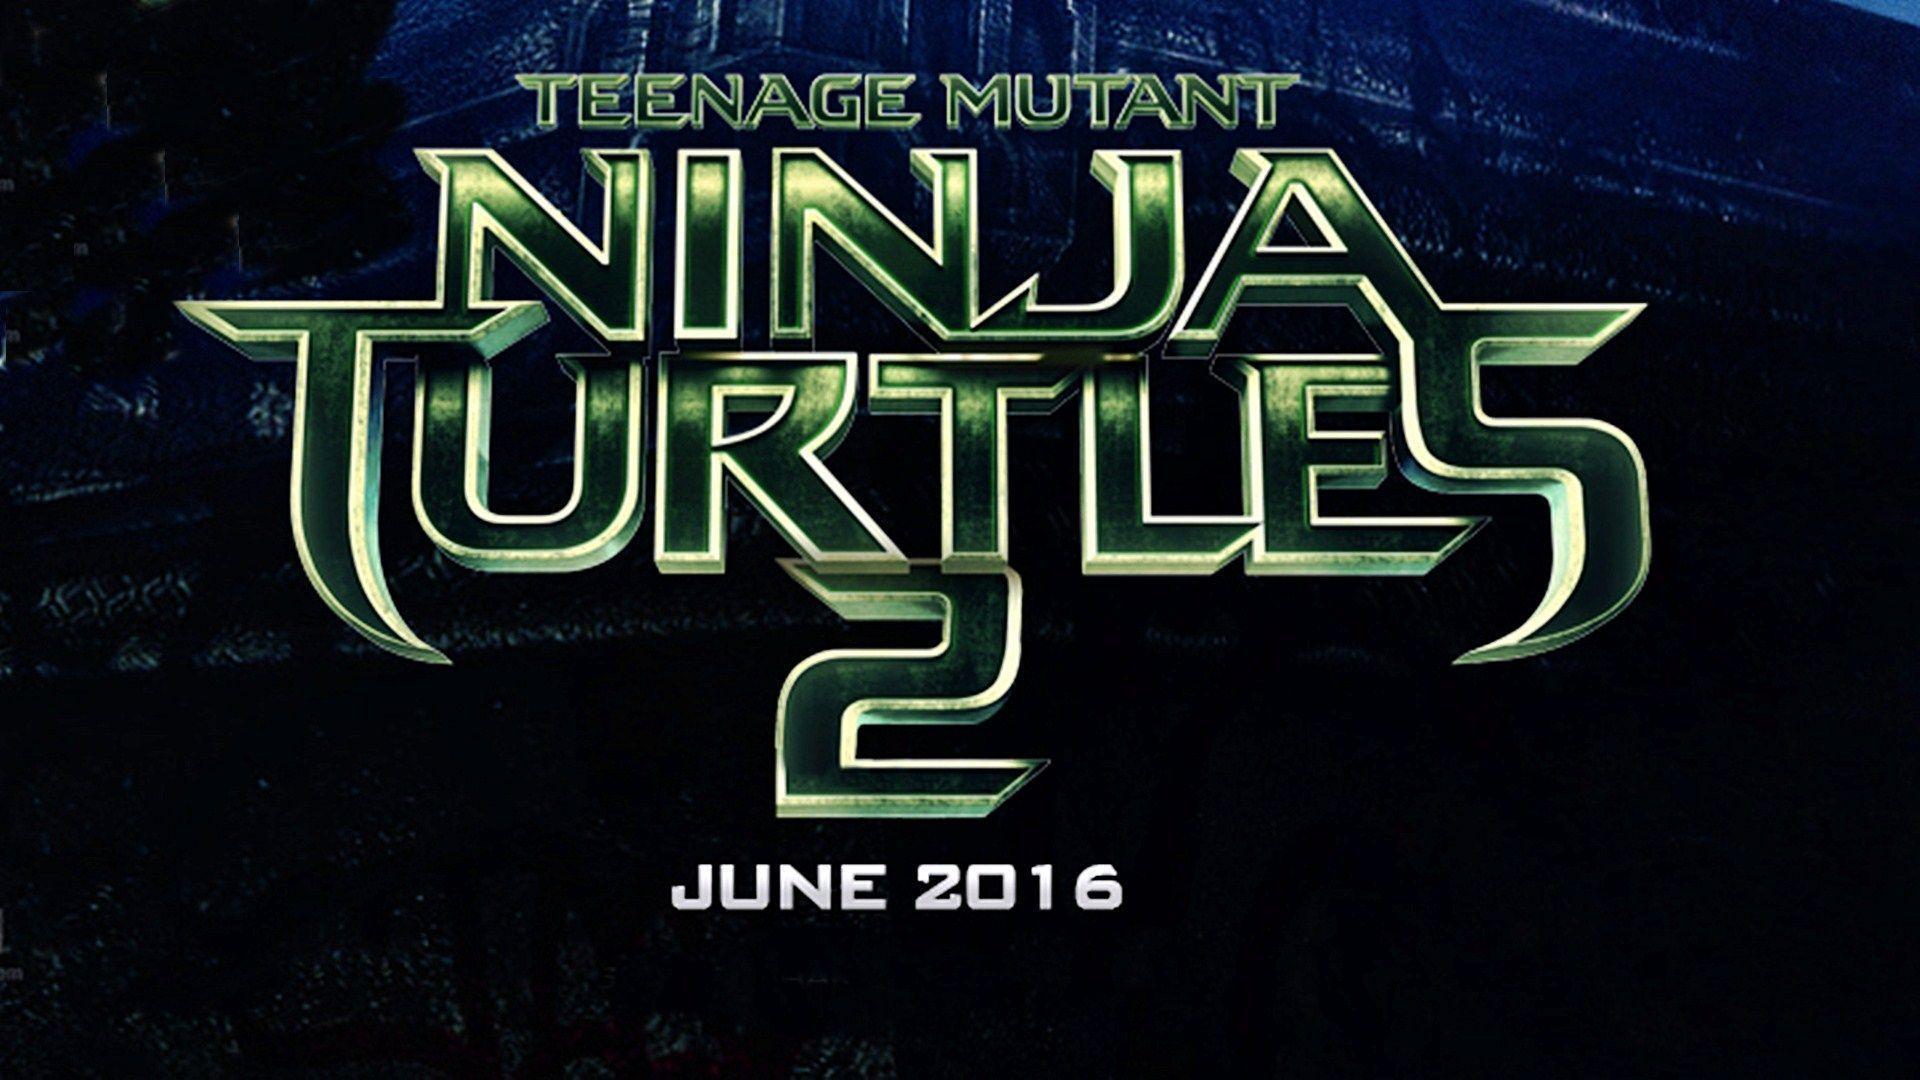 Teenage Mutant Ninja Turtles 2 Movie Poster Wallpaper